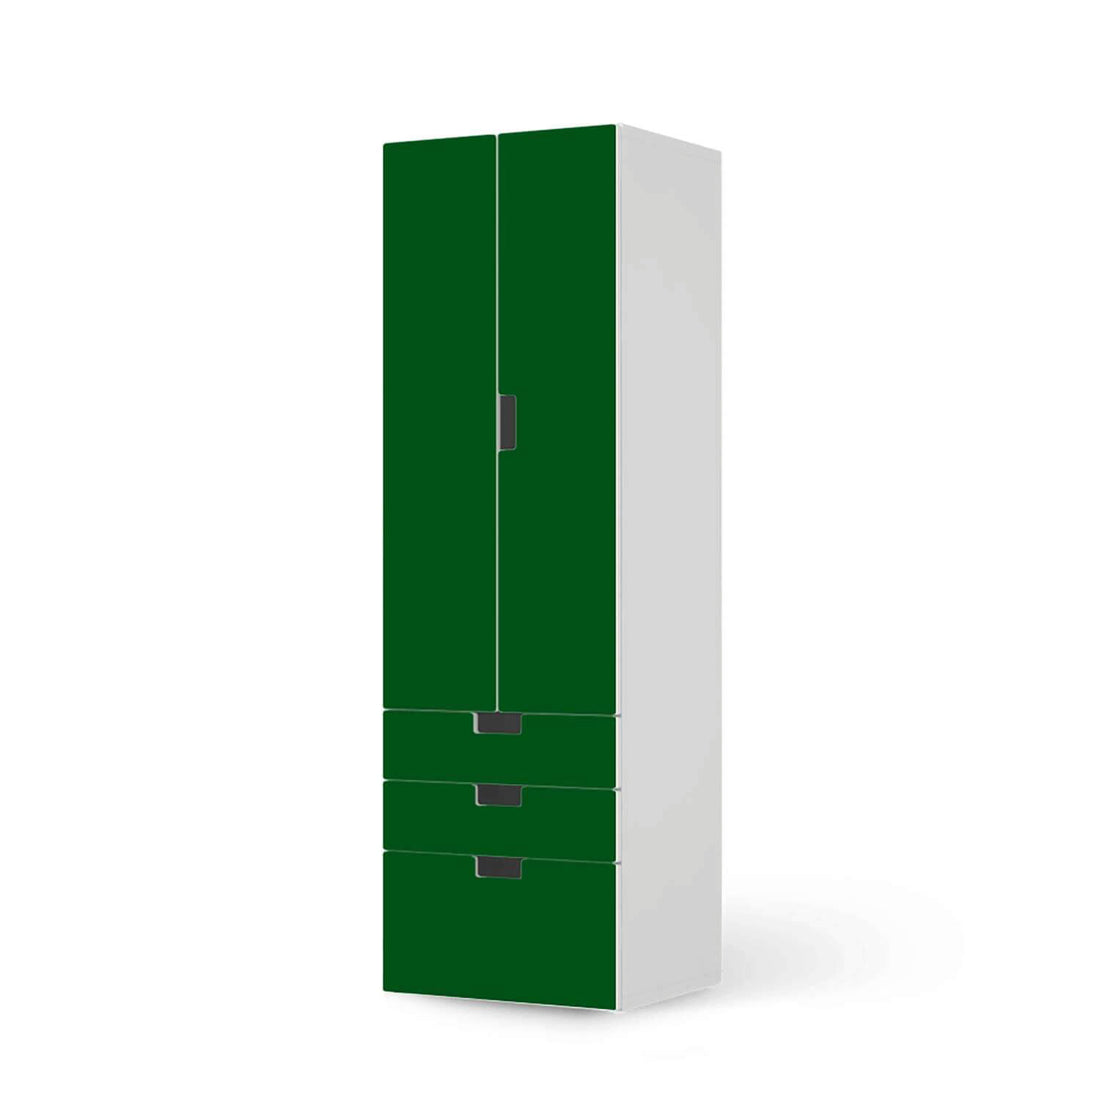 Klebefolie Grün Dark - IKEA Stuva kombiniert - 3 Schubladen und 2 große Türen (Kombination 1)  - weiss